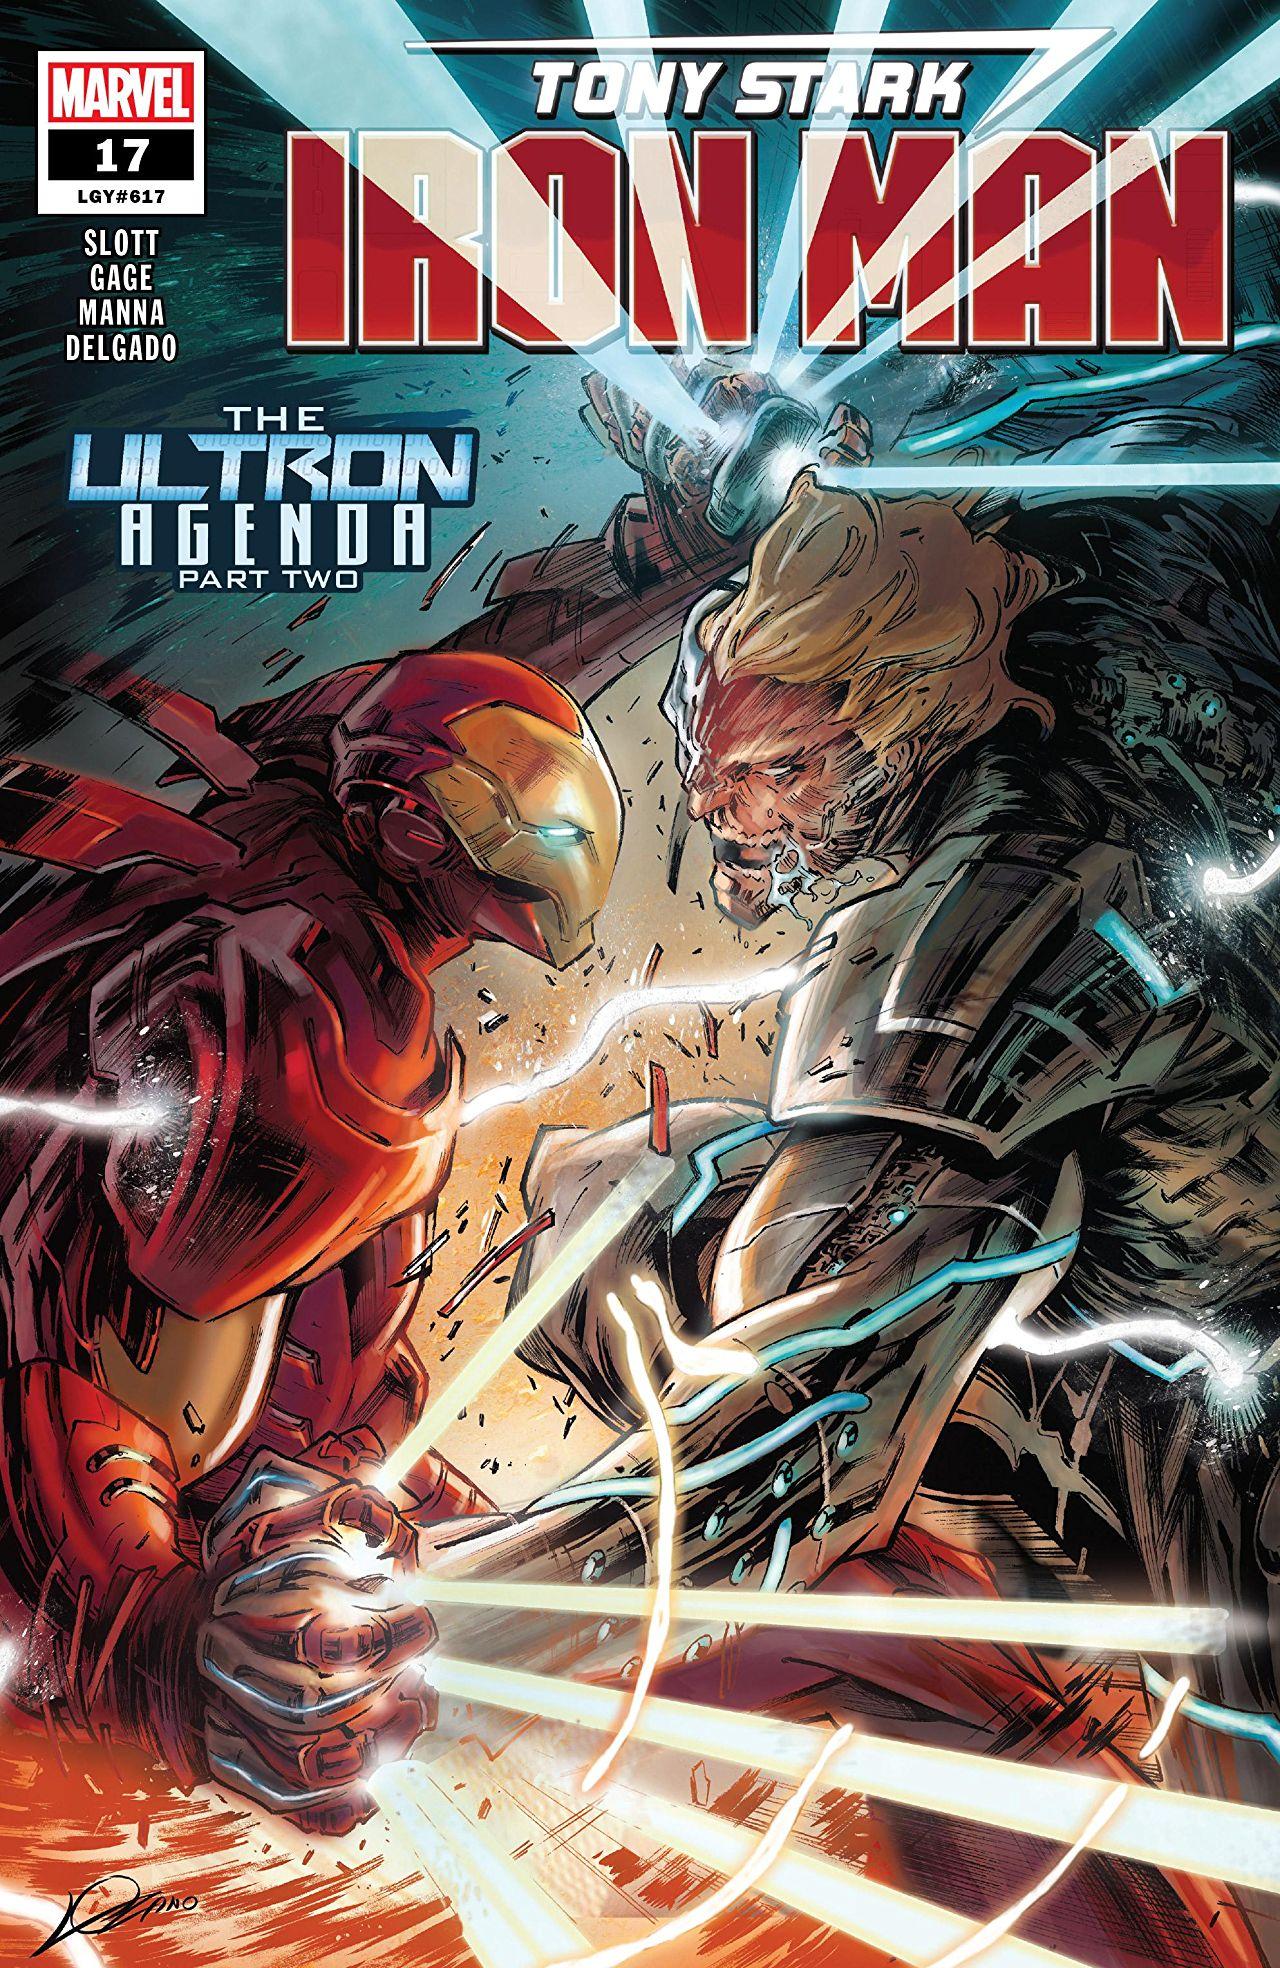 Tony Stark: Iron Man Vol. 1 #17